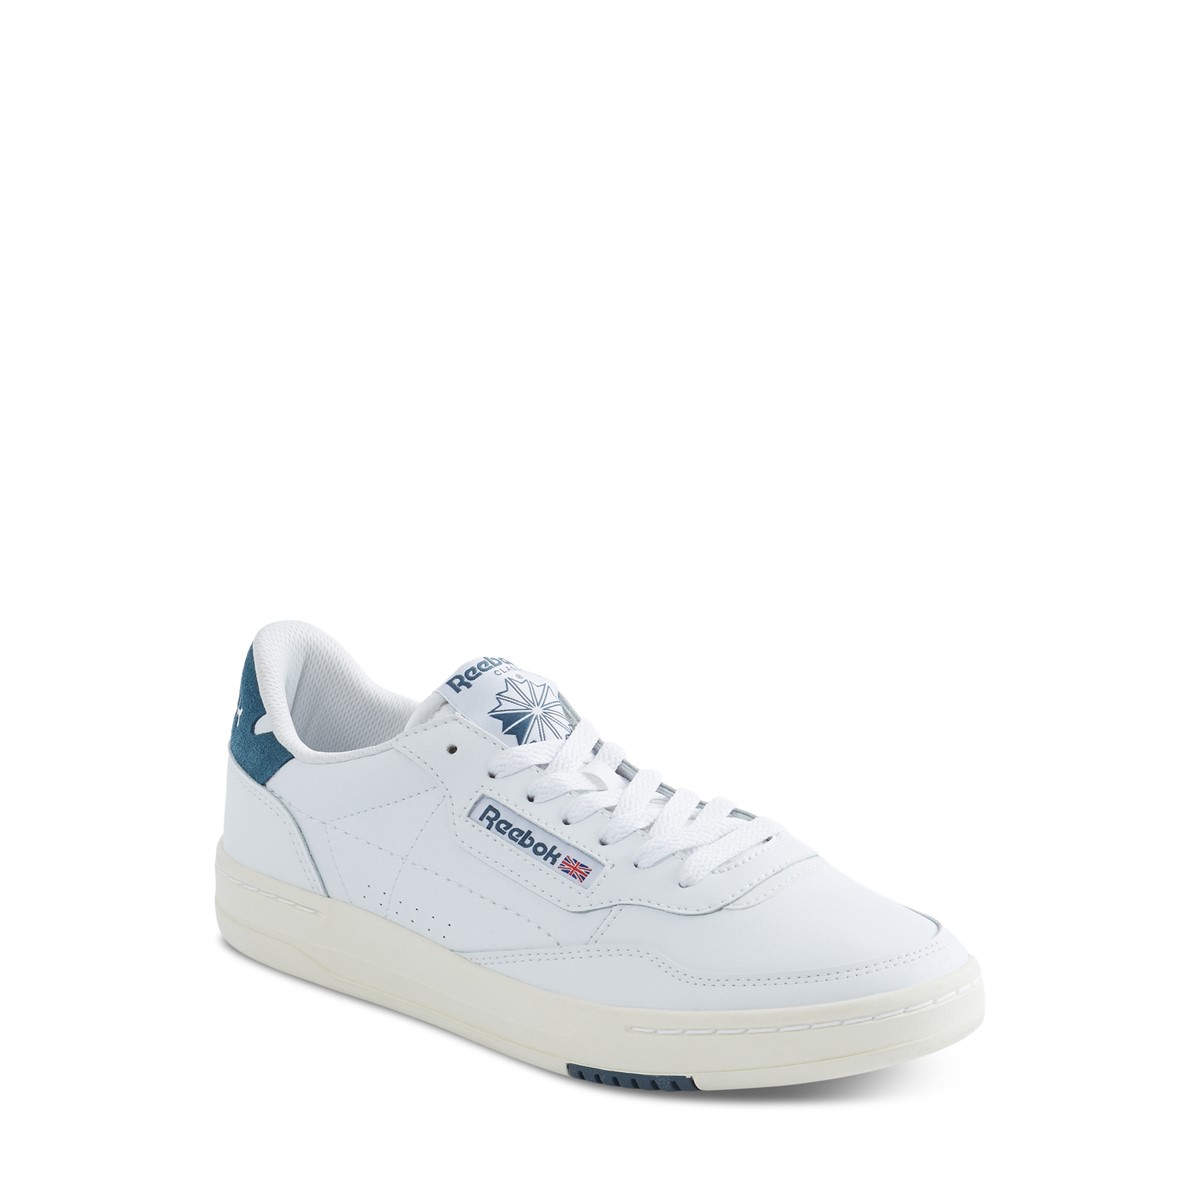 Men's Court Peak Sneakers in White/Blue/Chalk | Little Burgundy